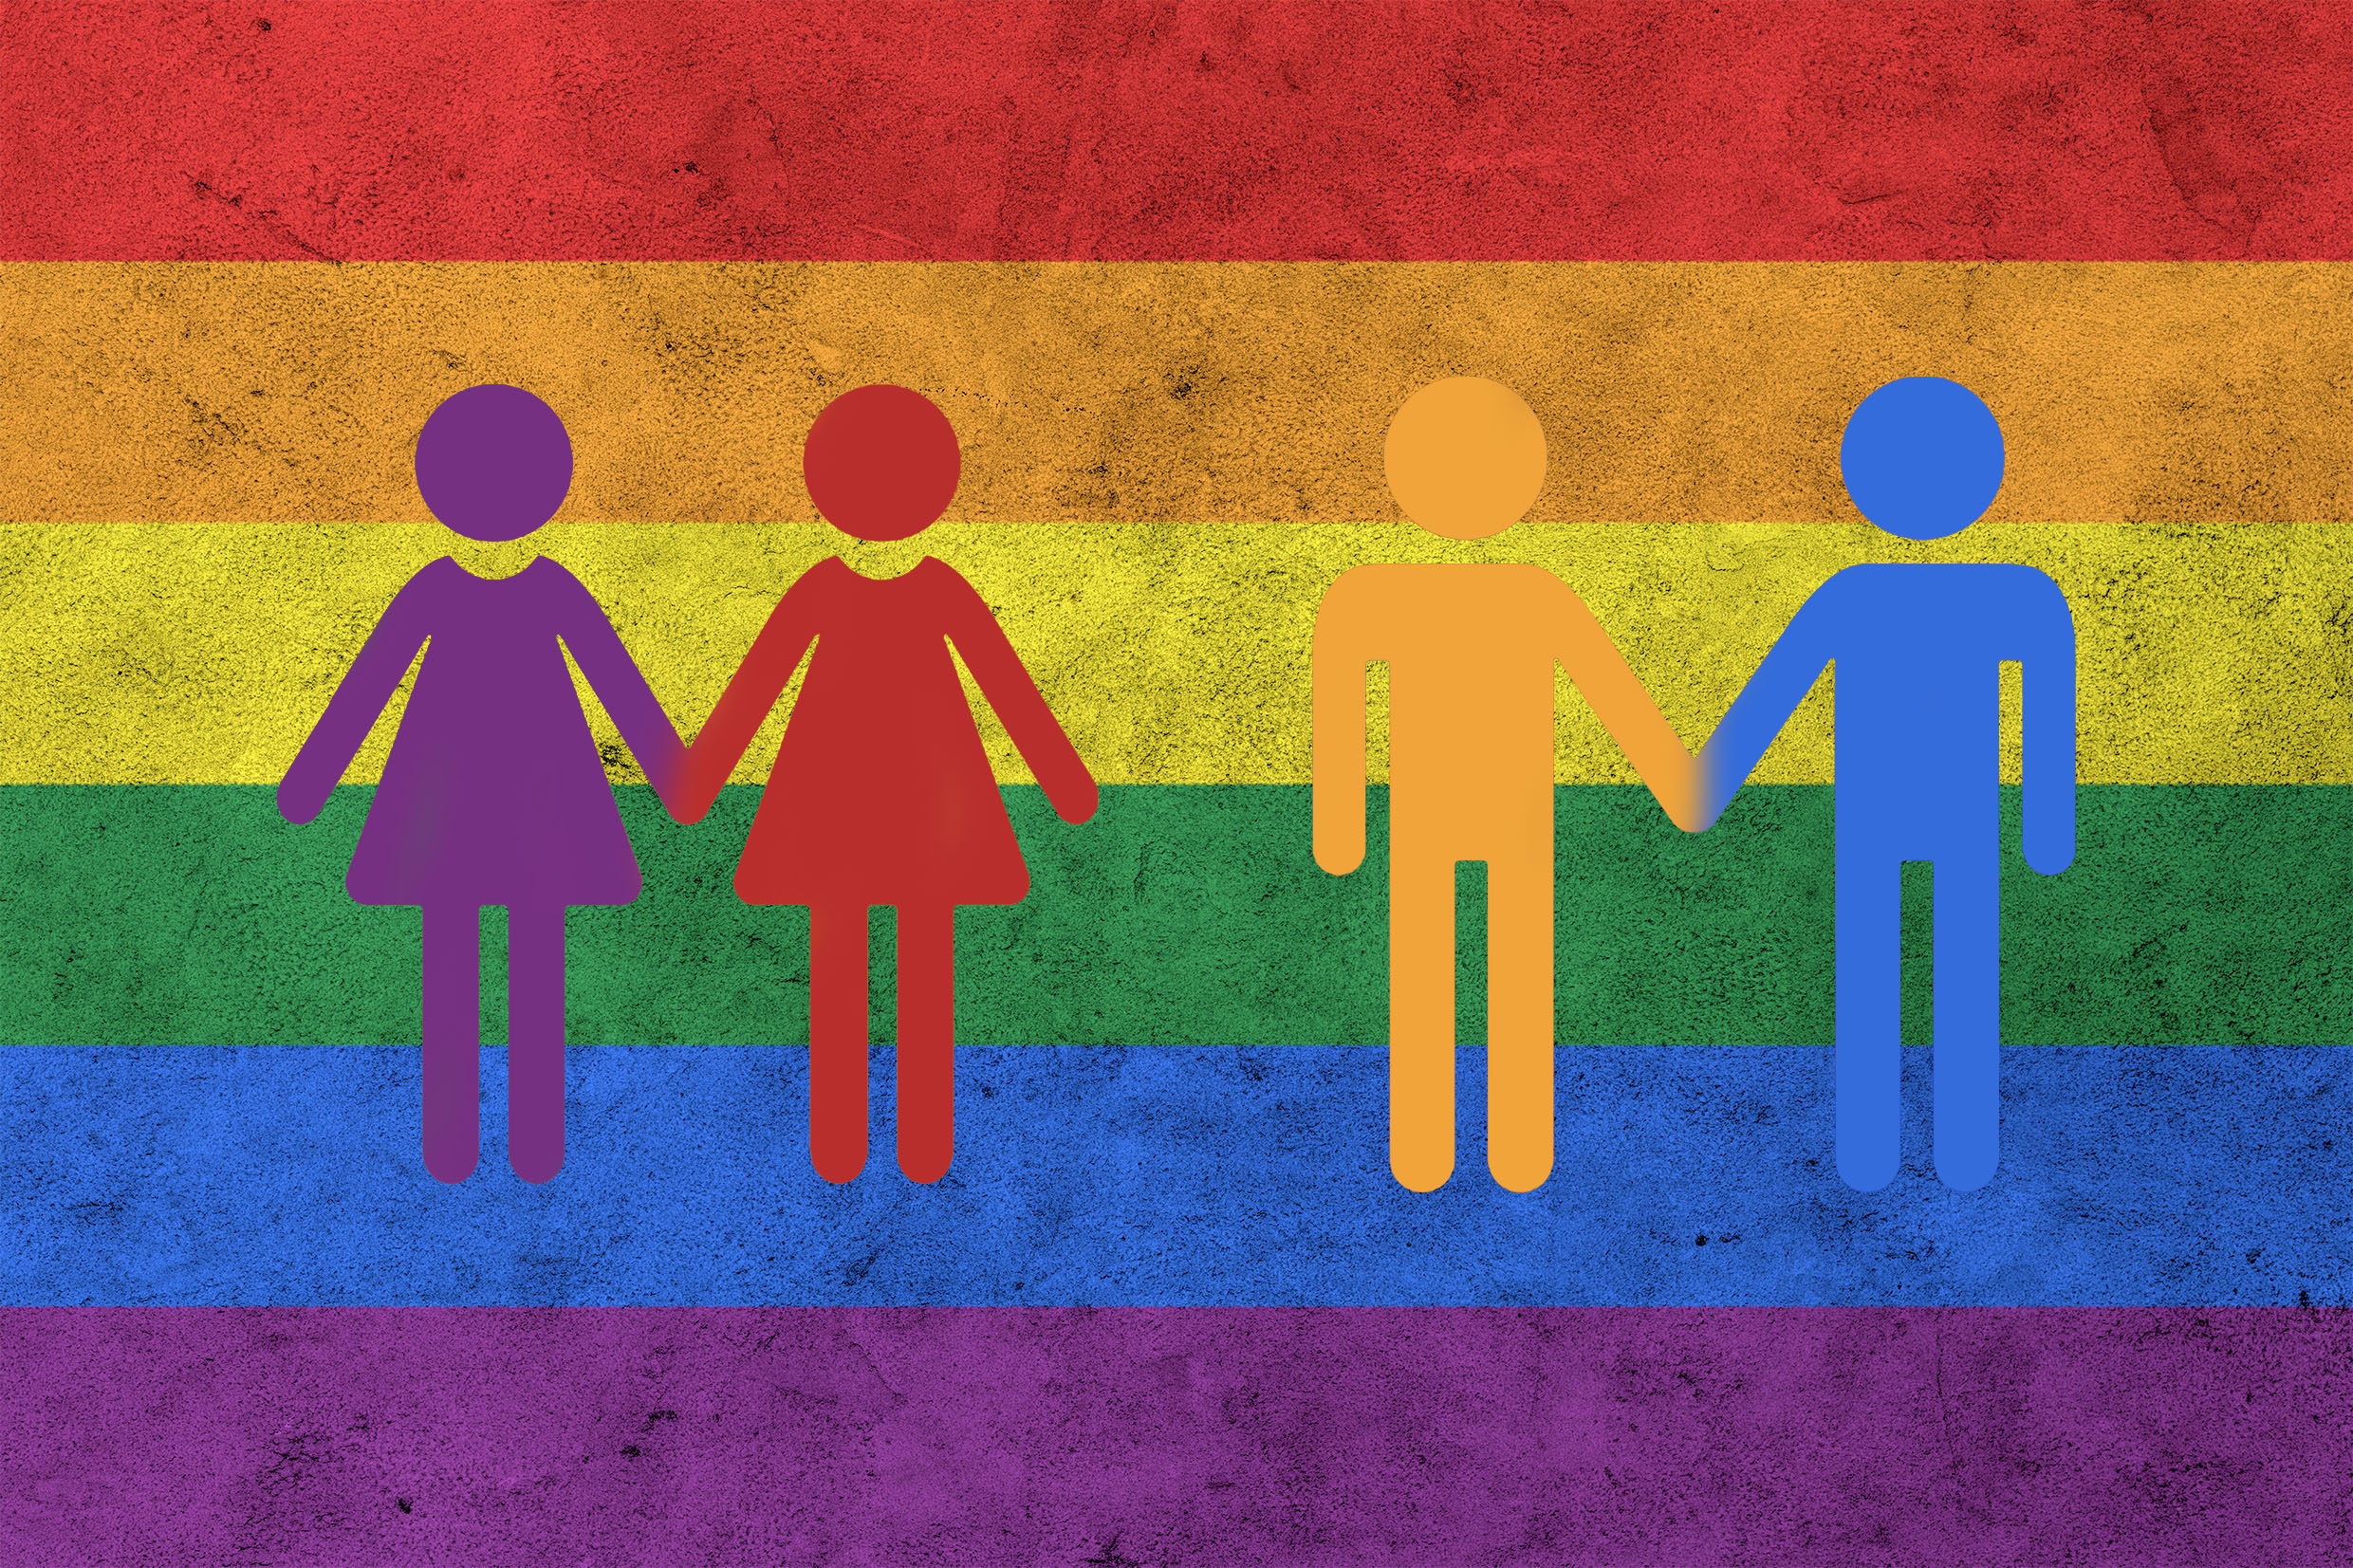 Opinião: Apesar da homofobia na repercussão, Tracer LGBT em